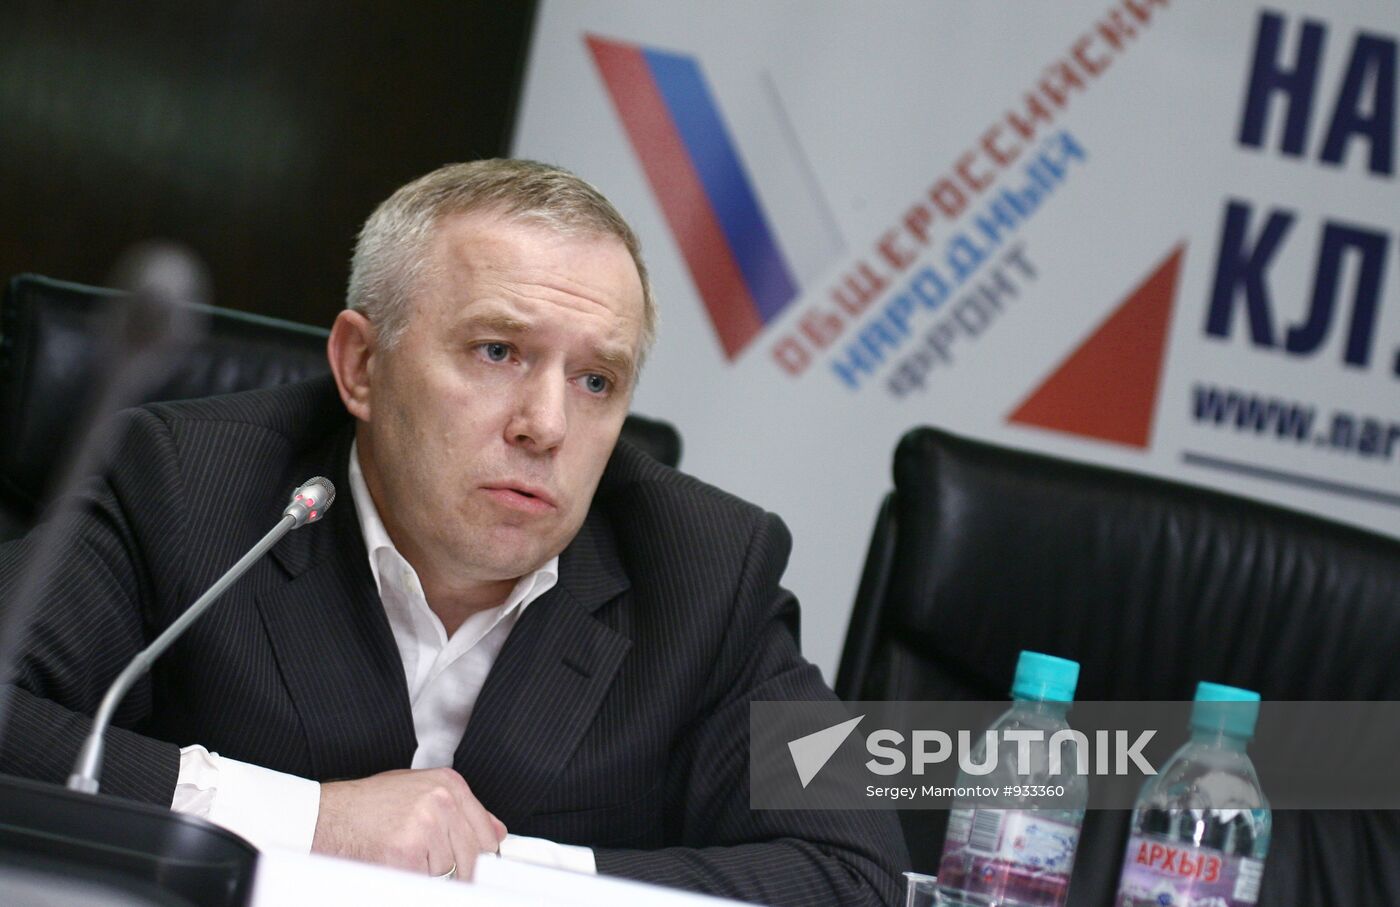 Yury Shuvalov